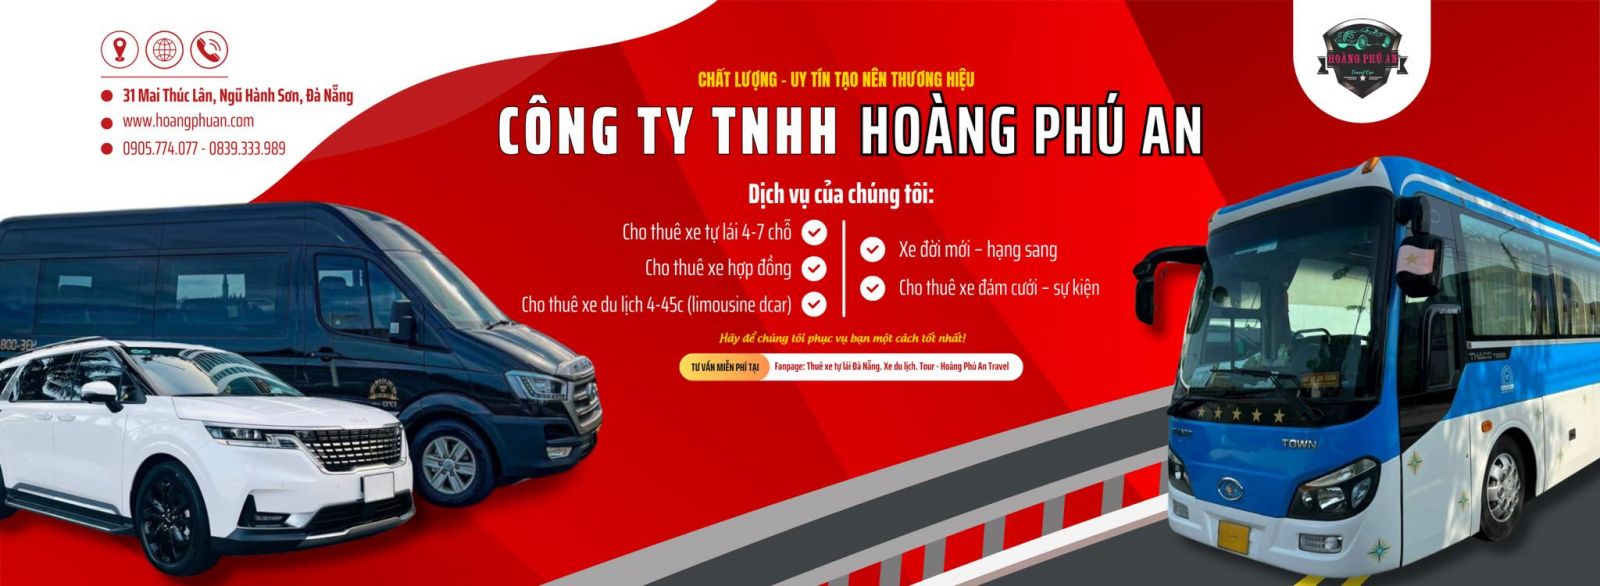 Hoàng Phú Travel - CÔNG TY DU LỊCH HOÀNG PHÚ AN